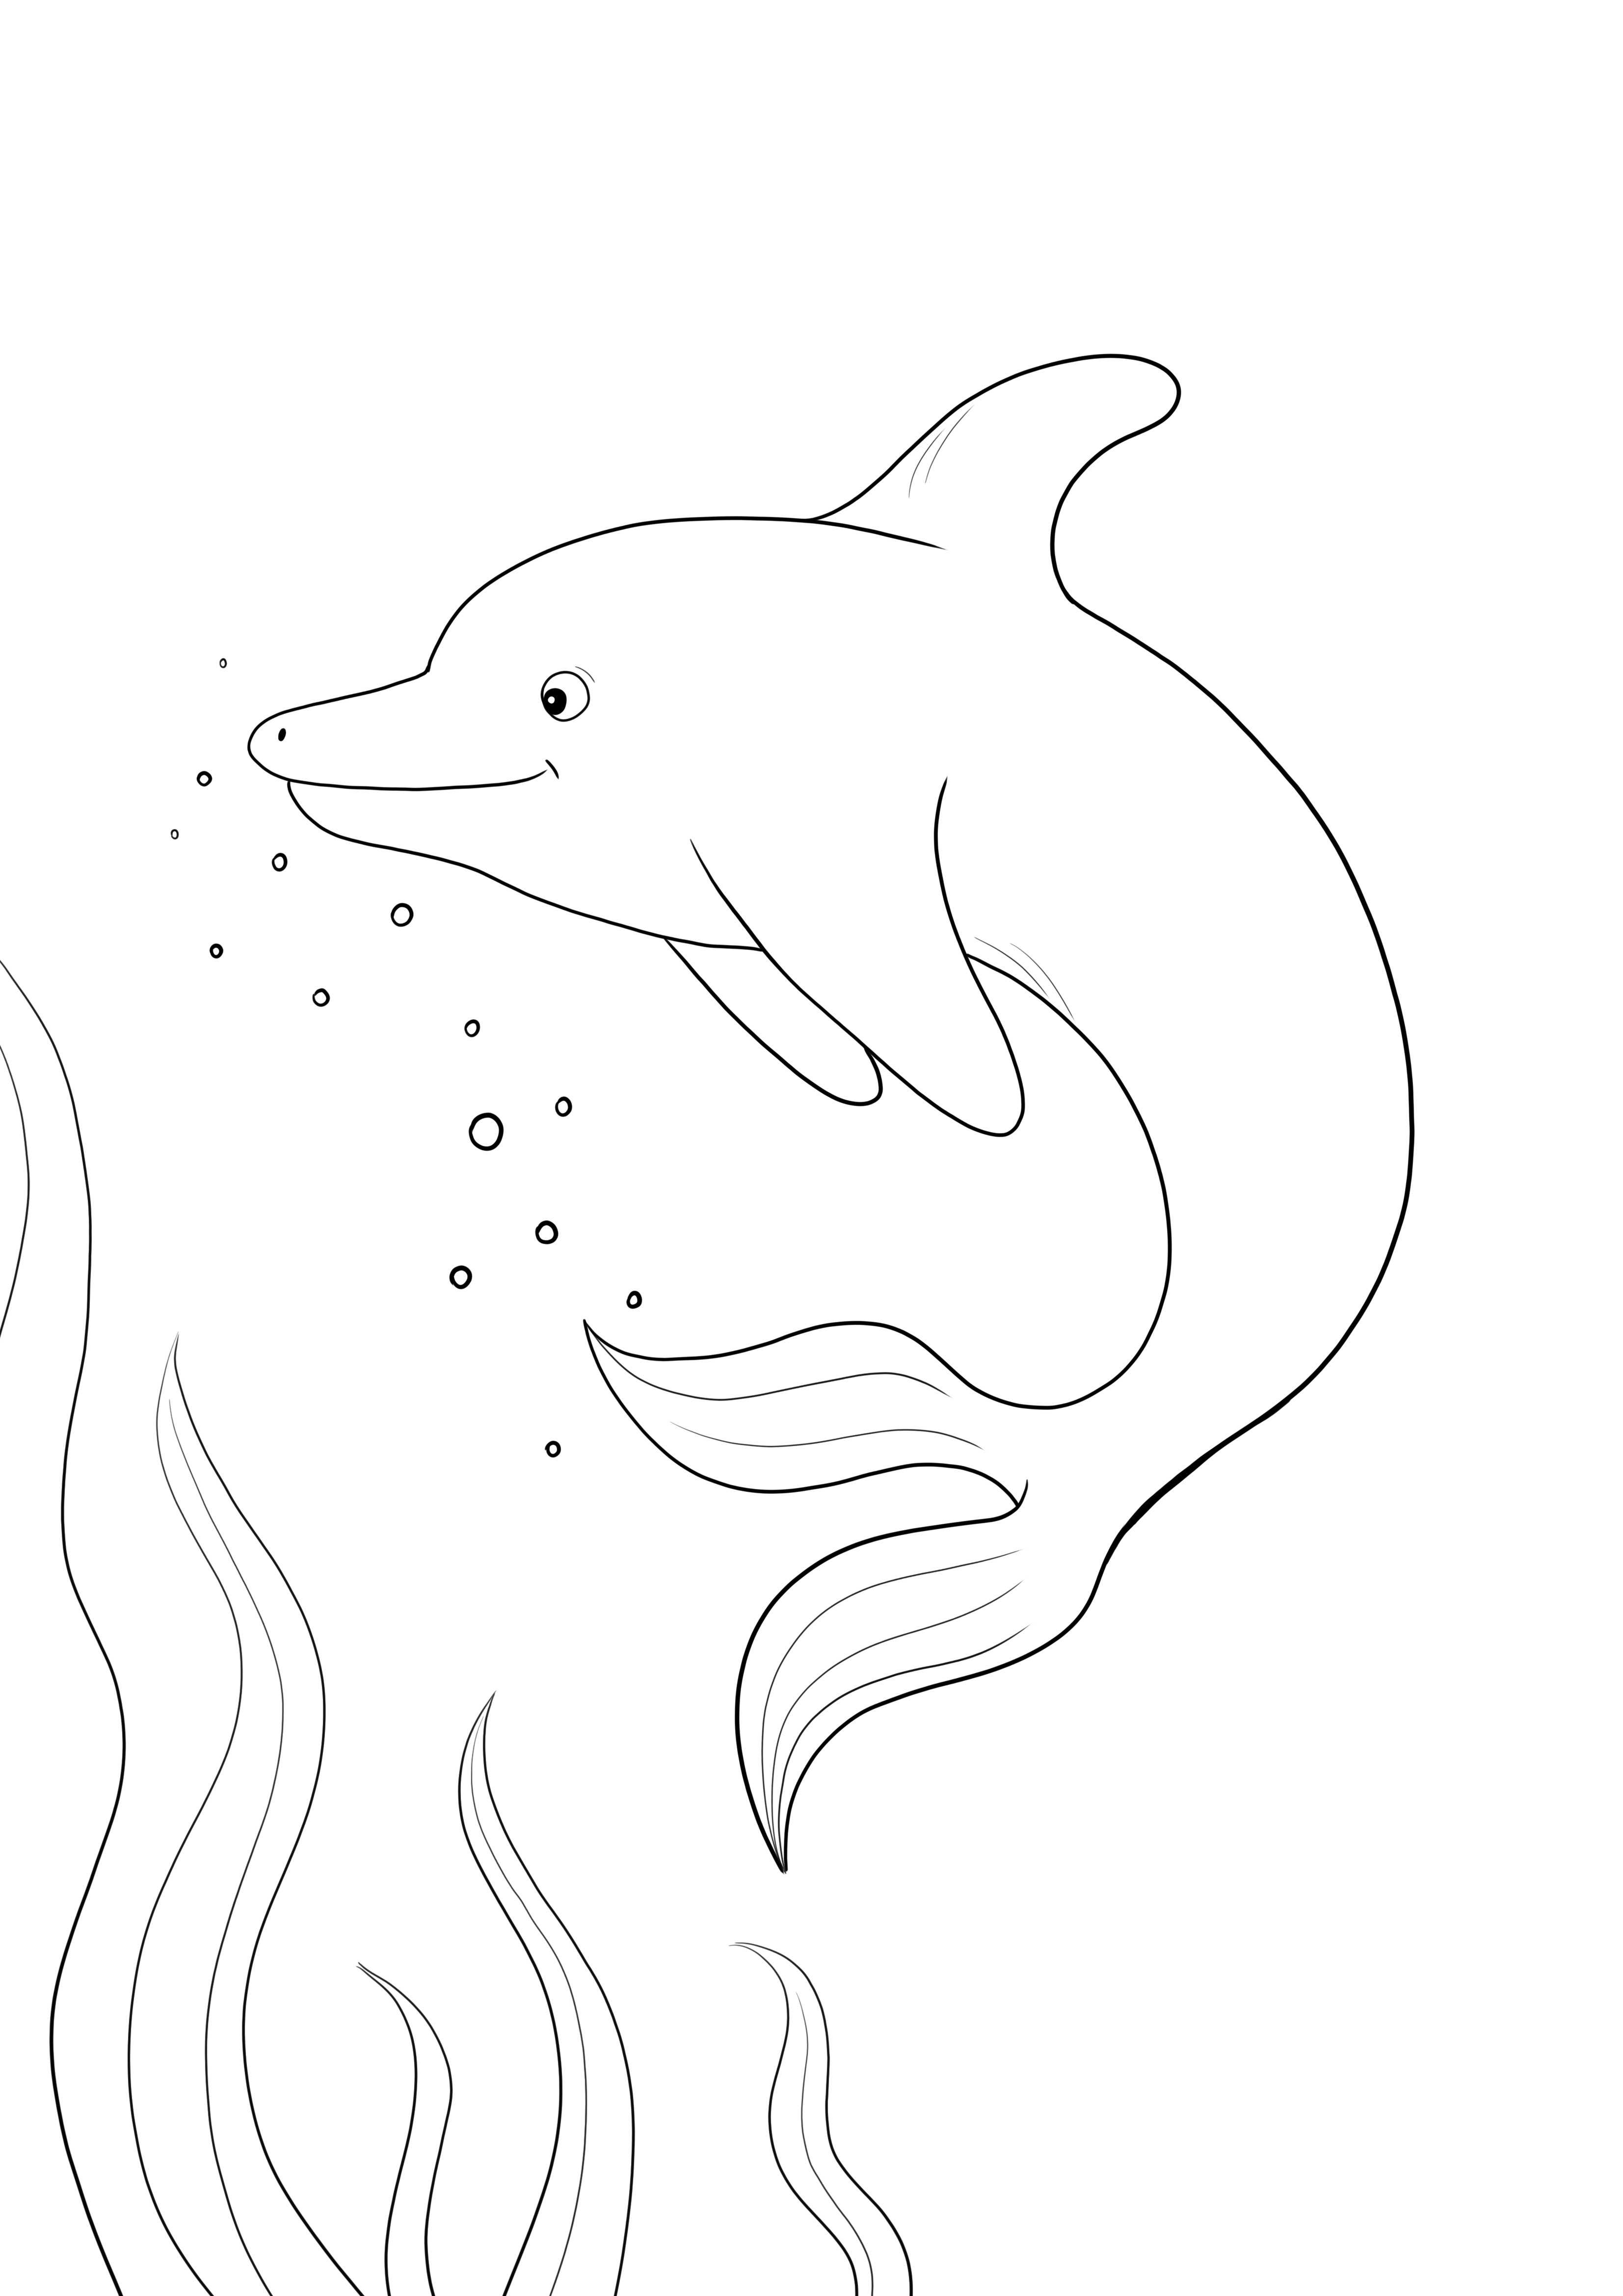 Śliczny delfin do kolorowania i bezpłatnego drukowania obrazu